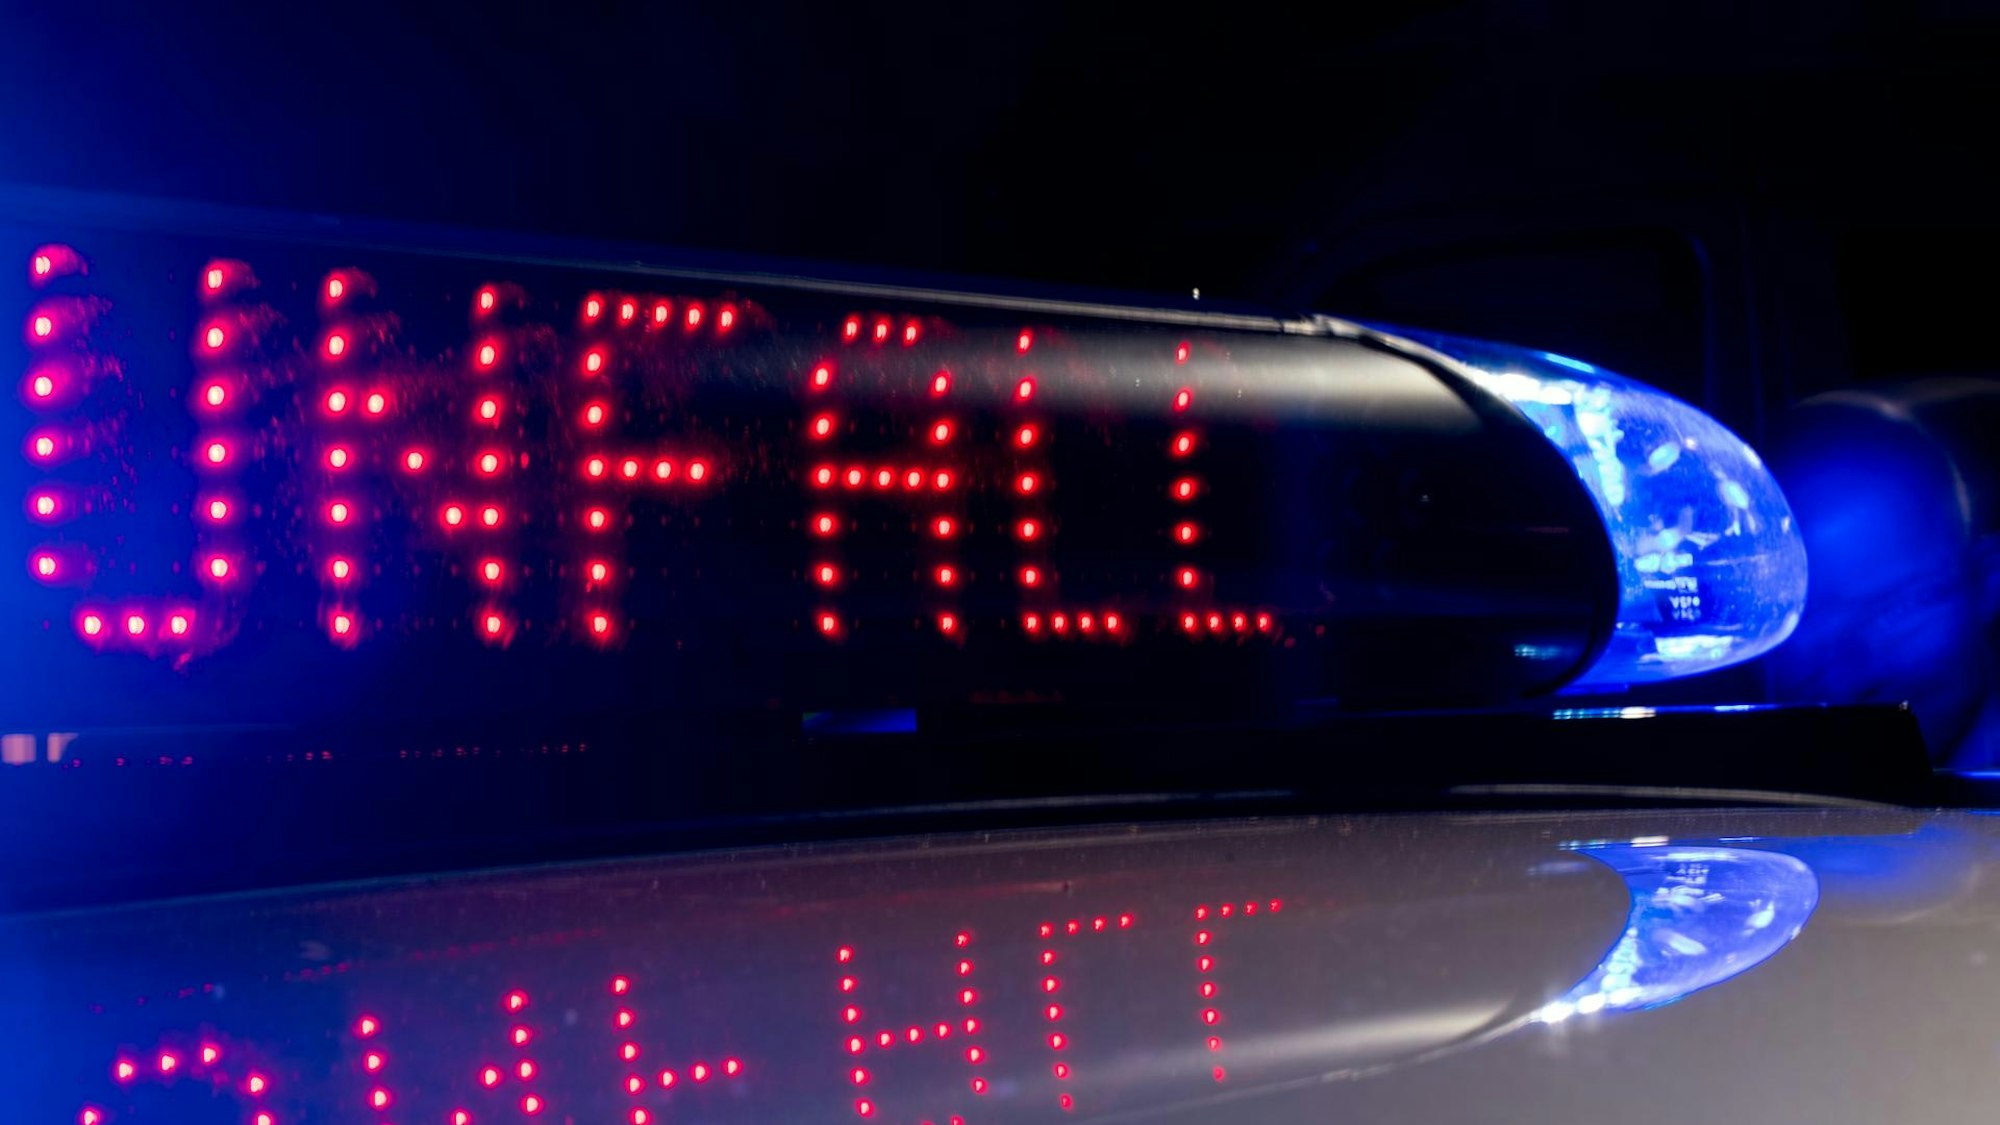 Am Montag prallte am Stauende an der Anschlussstelle Klettenberg ein Autofahrer  in einem als gestohlen gemeldeten Ford Fiesta auf das Heck eines Sattelzugs. (Symbolbild)